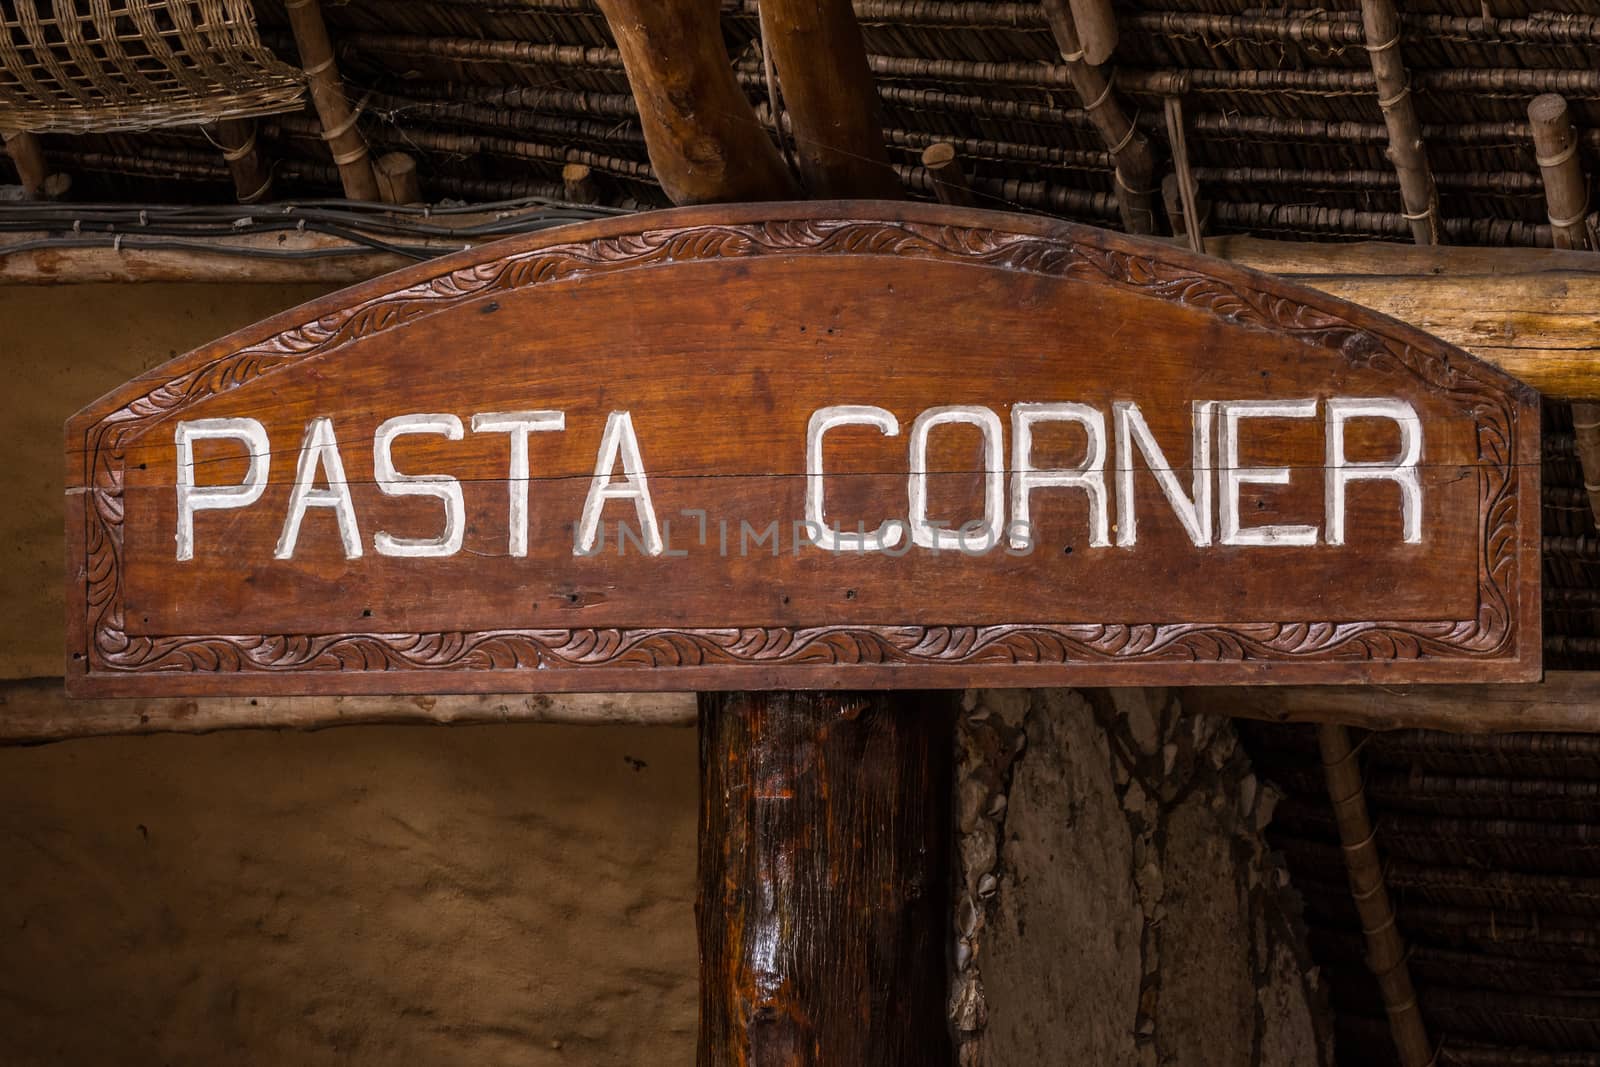 Pasta corner sign.